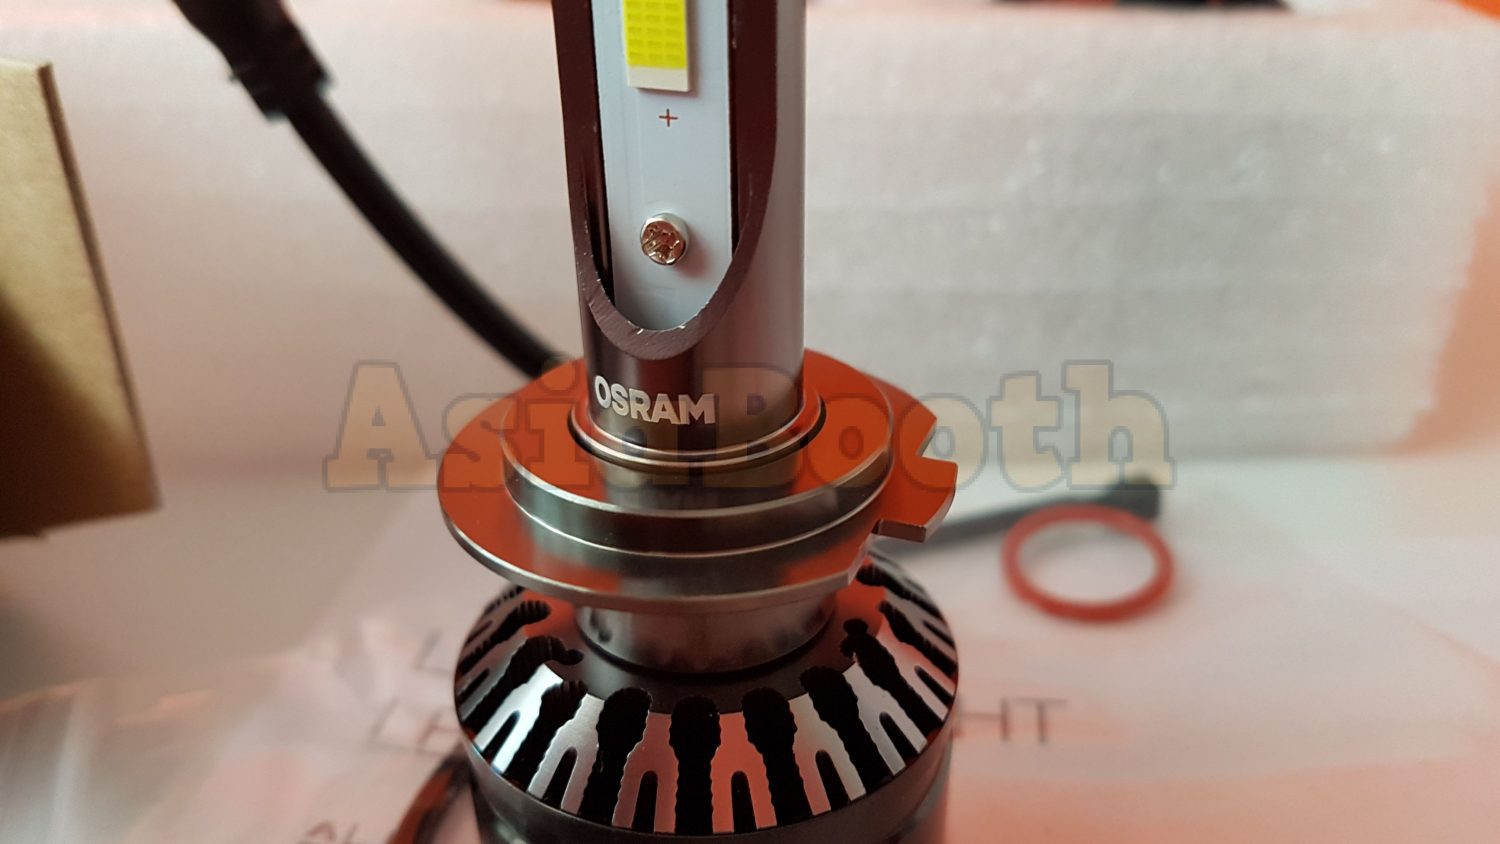 OSRAM LED Headlight LED Retrofit Conversion Kit 12Volt – H8 H11 H16 6000K -  Asia Booth